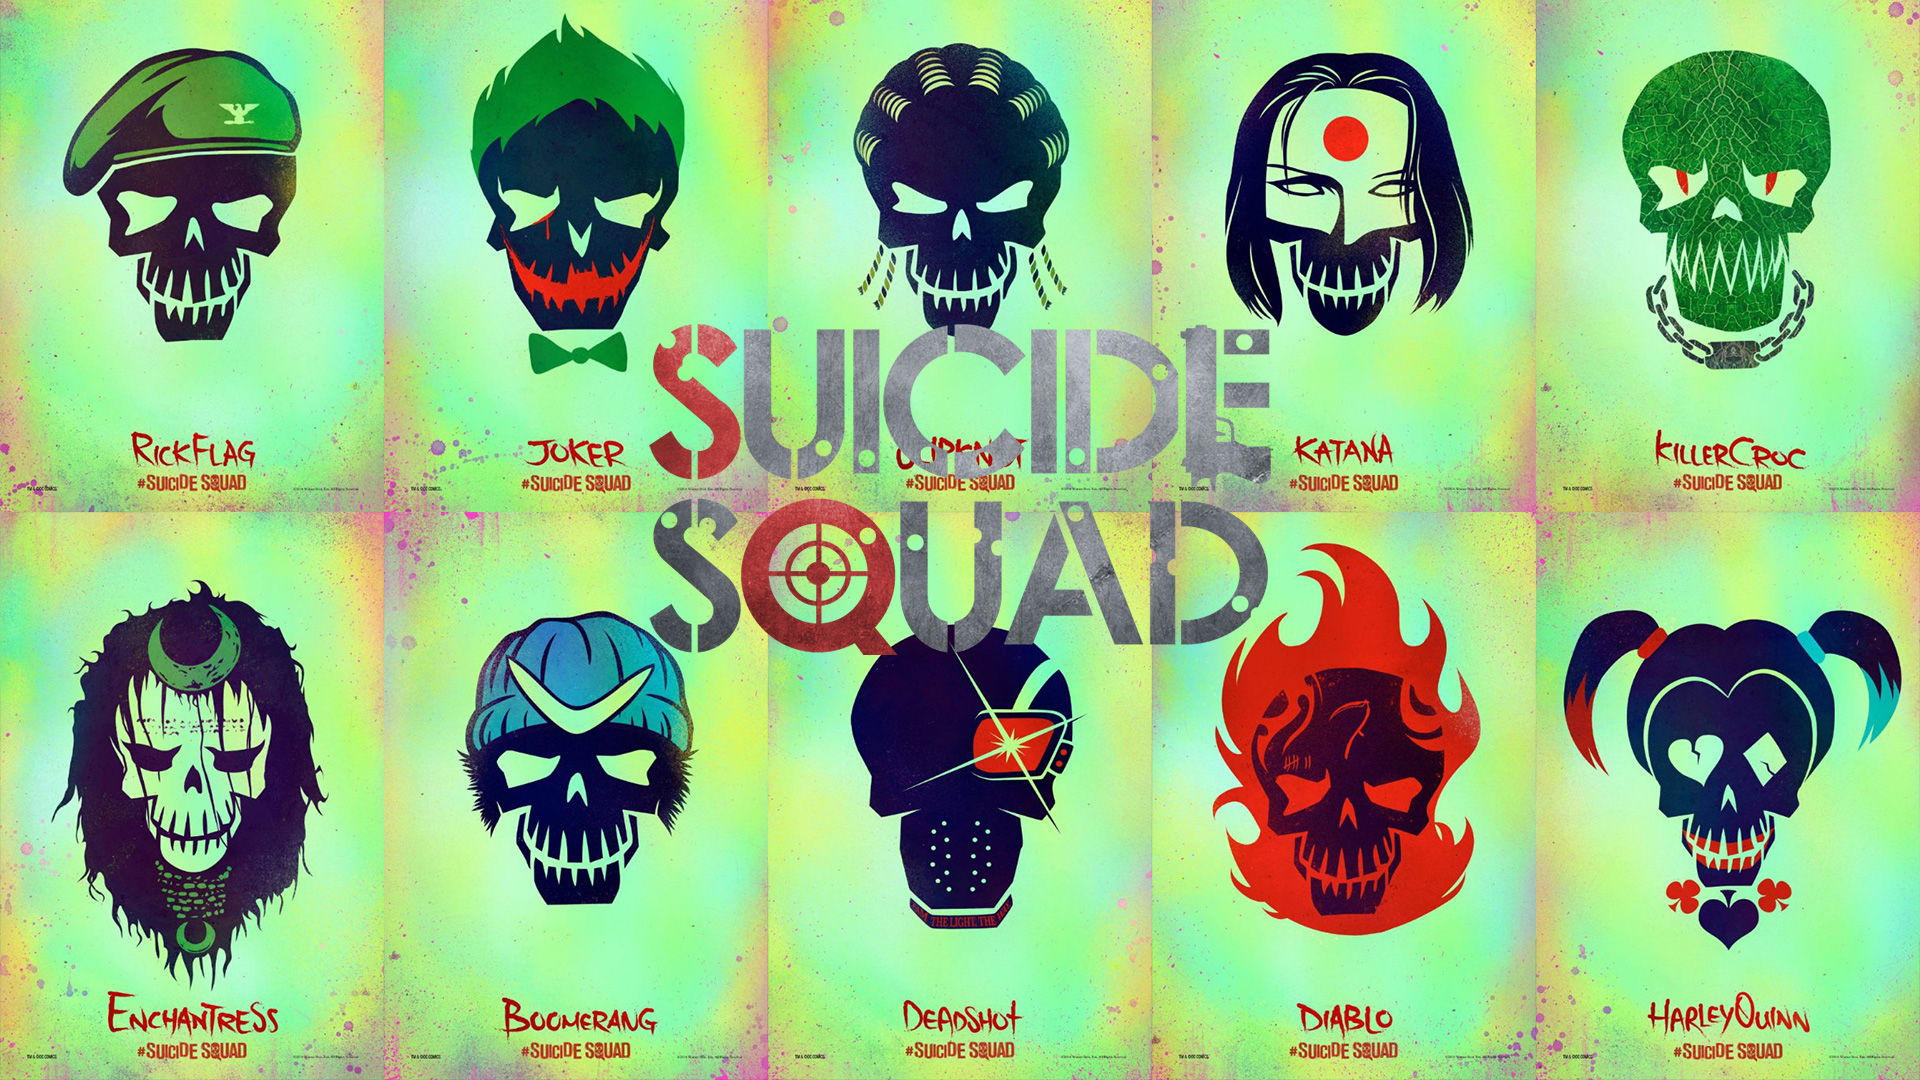 Suicide Squad Wallpaper 525koqu 4usky